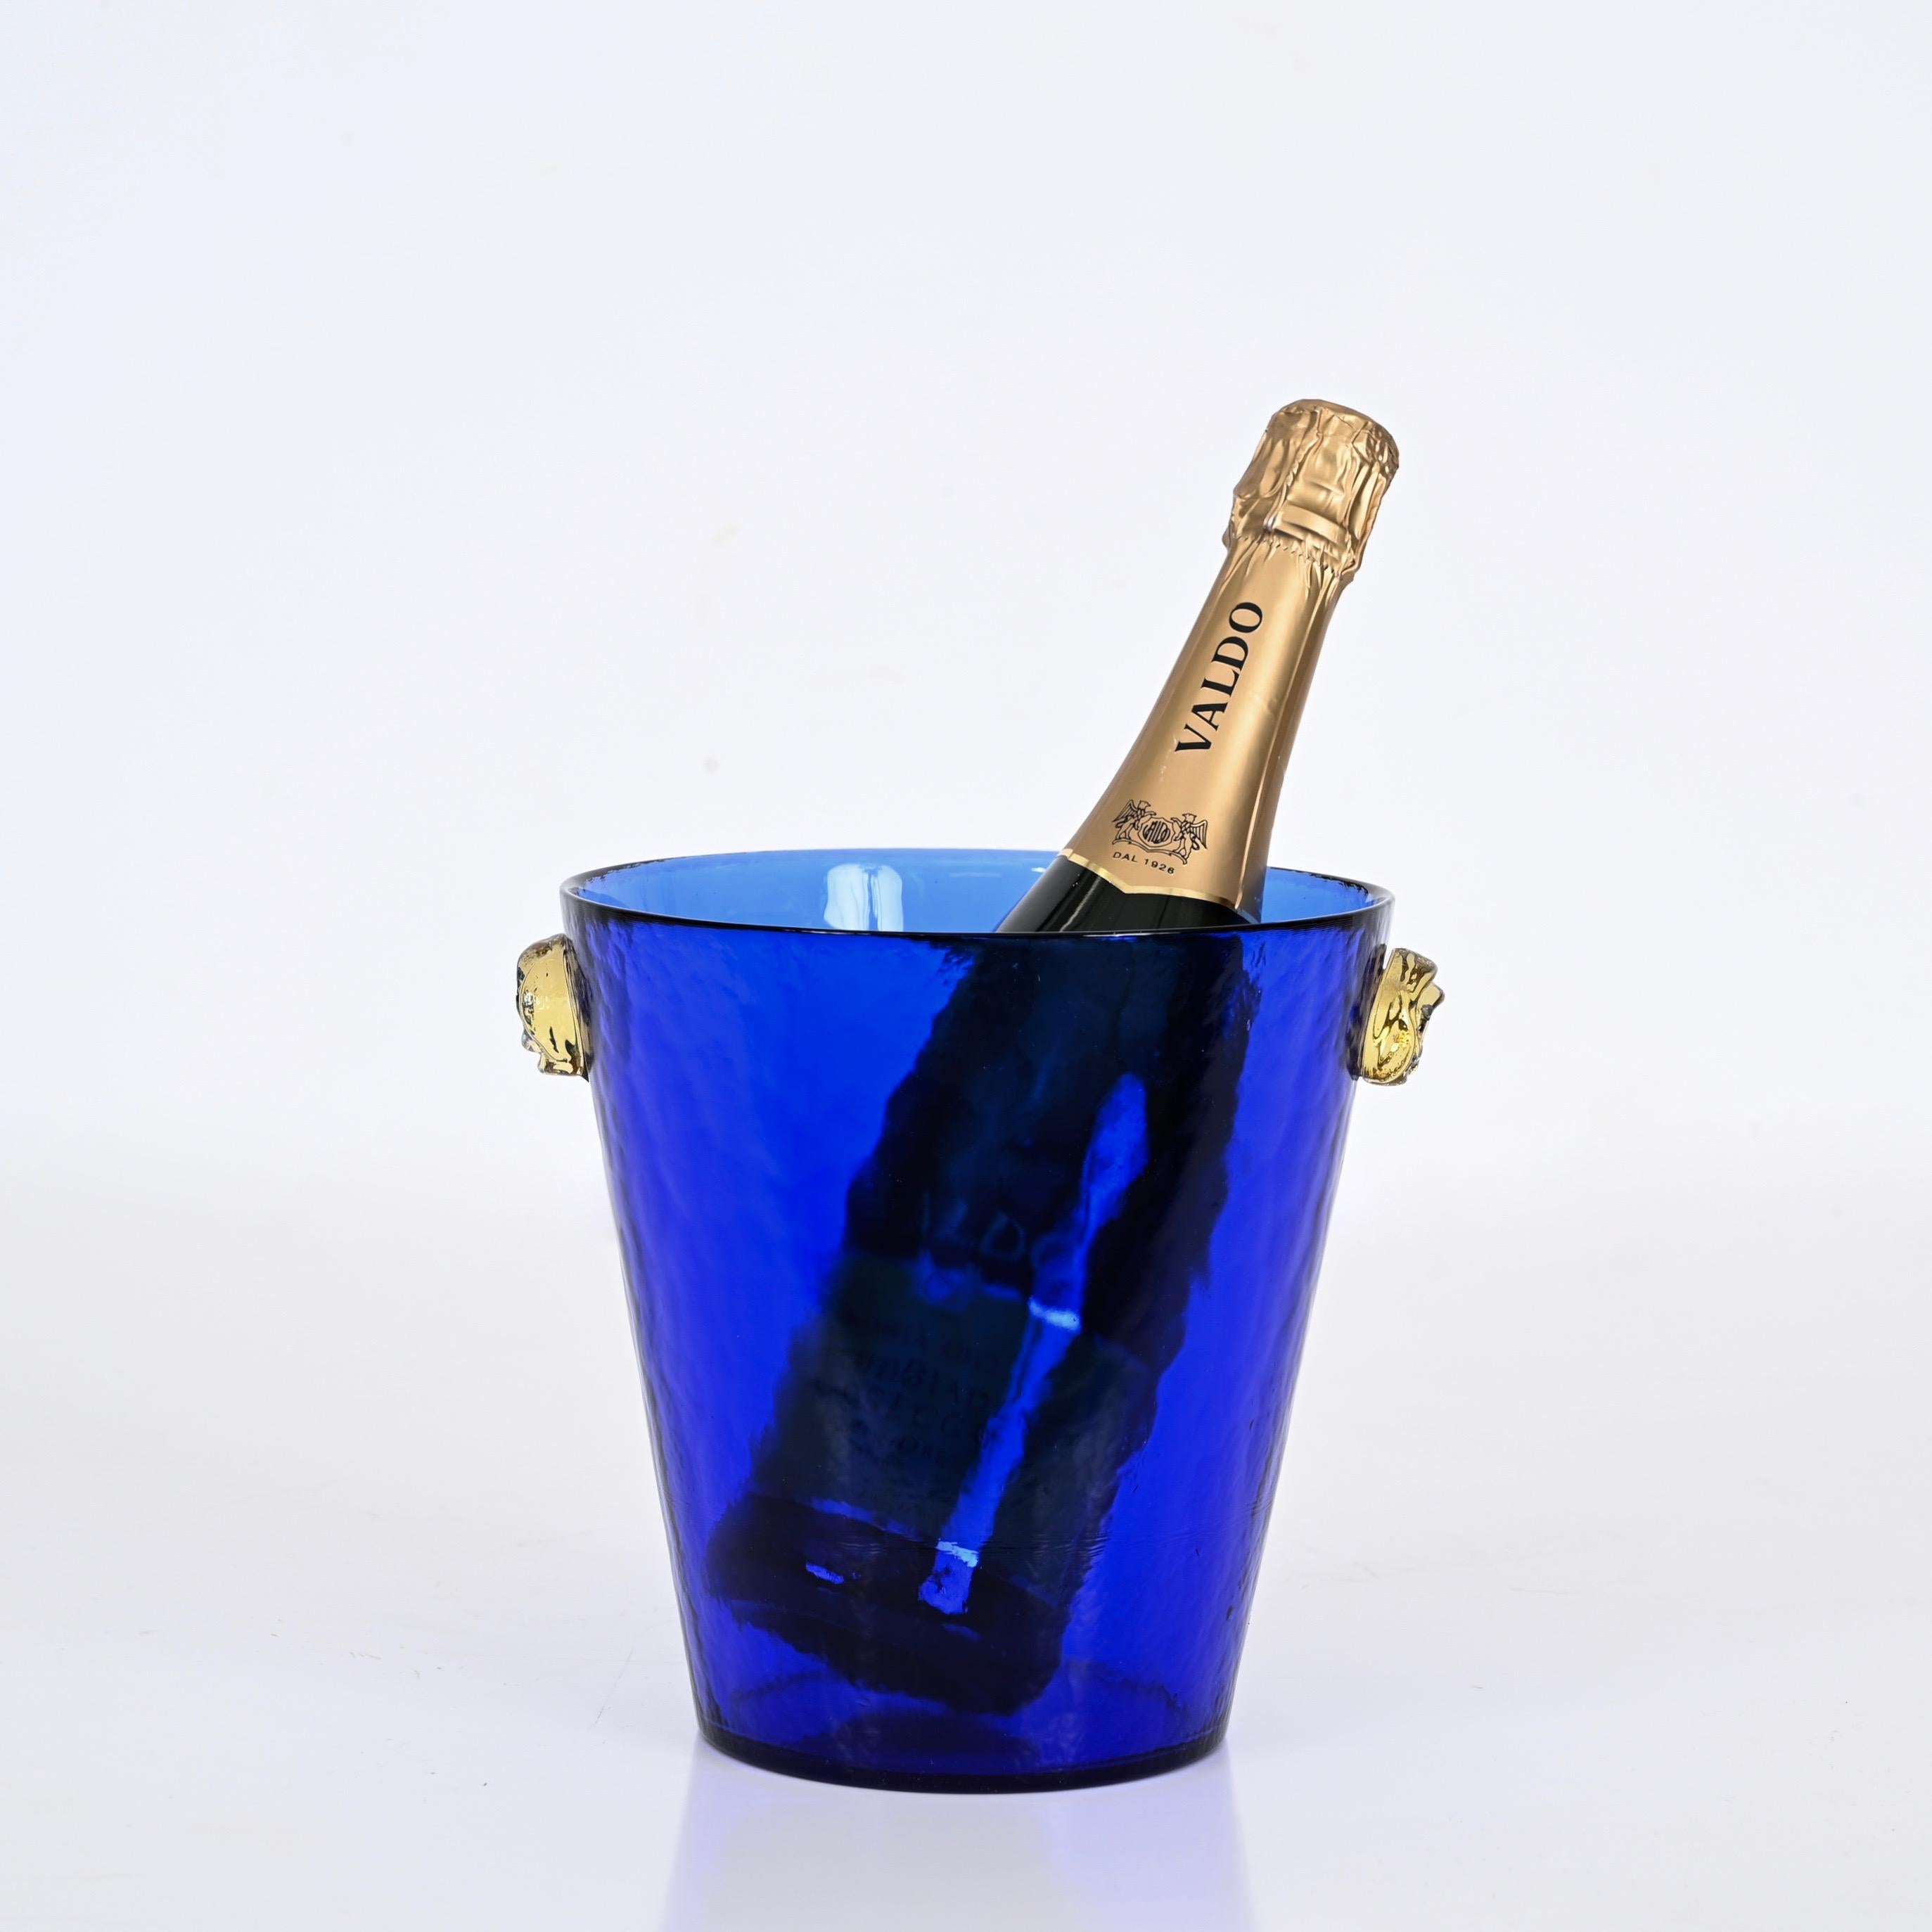 Superbe seau à glace en verre bleu de Murano avec poignées en verre doré. Cette magnifique pièce a été fabriquée à Murano, en Italie, dans les années 1960.

Ce seau à glace est fabriqué dans un verre bleu incroyablement vibrant et est complété par